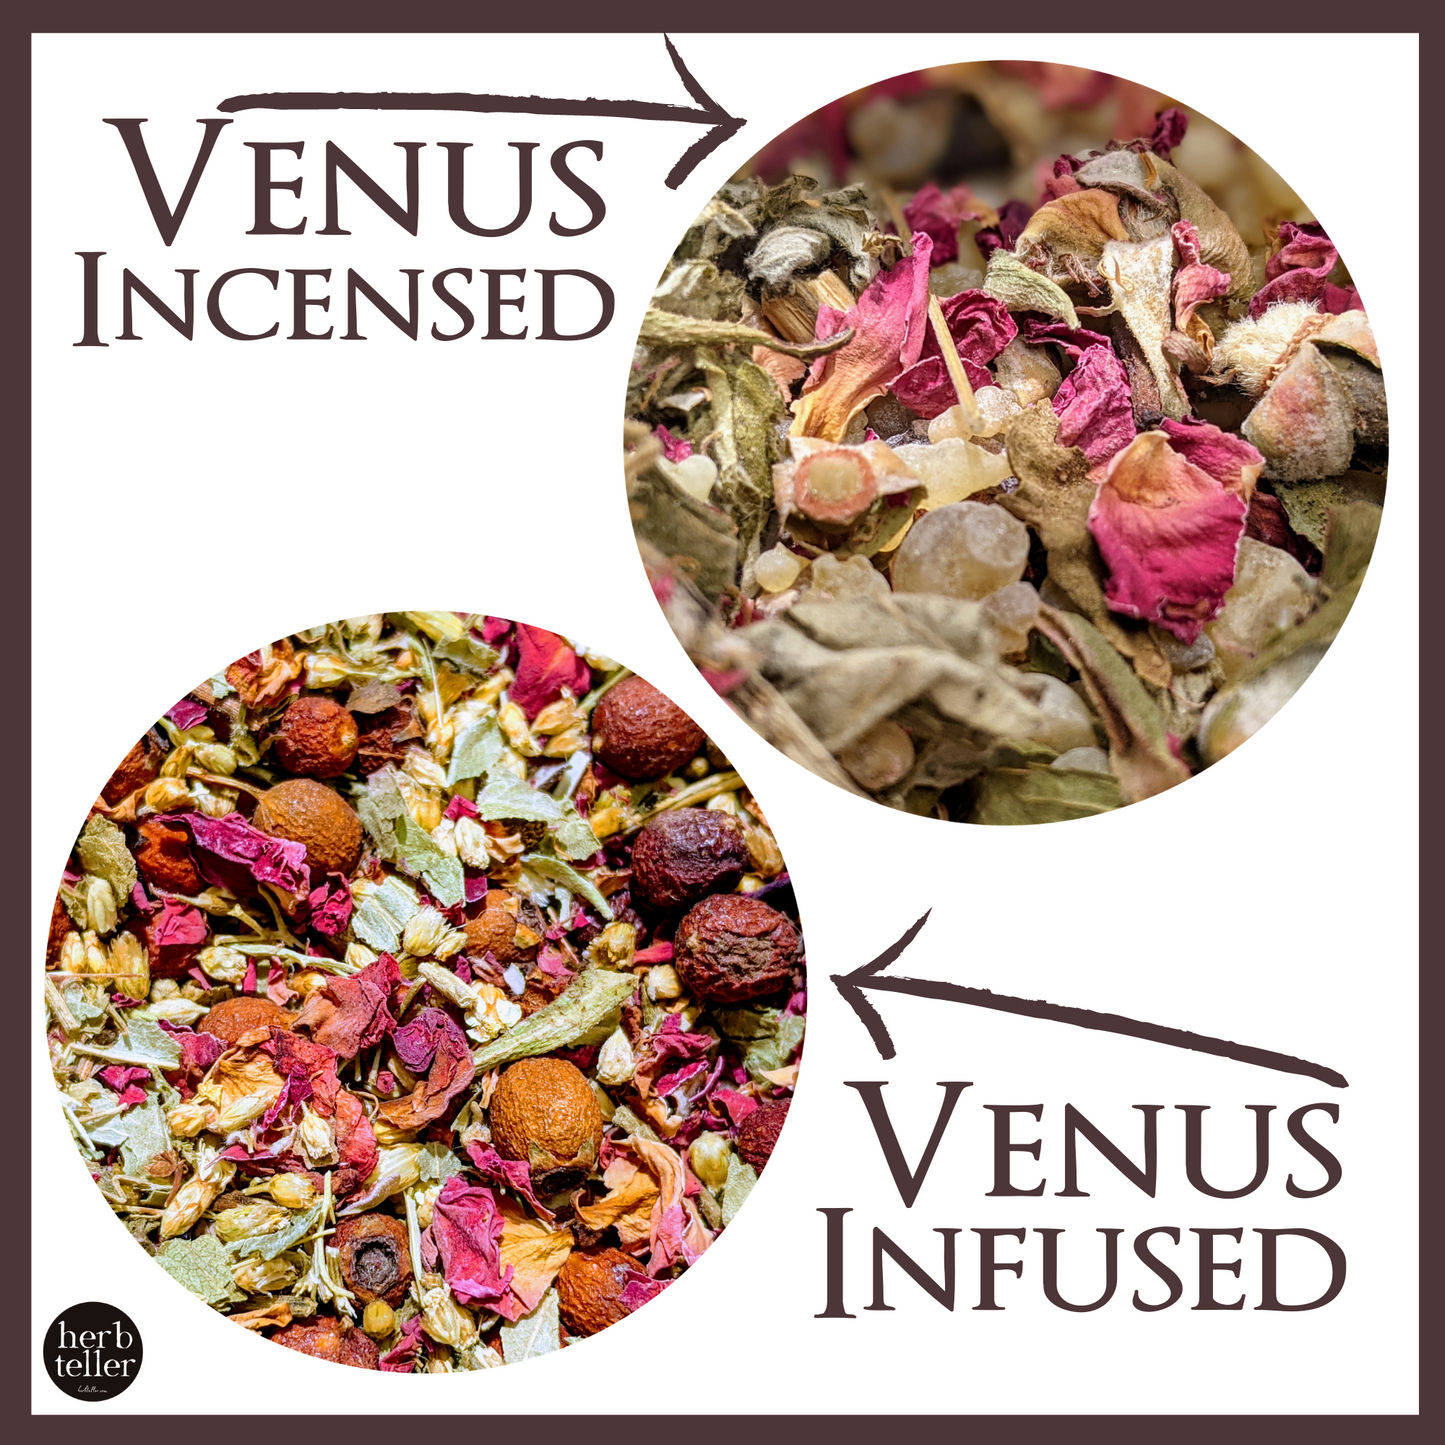 Oh My Venus Herbmusement (Tea/Oil/Incense) Ritual Set